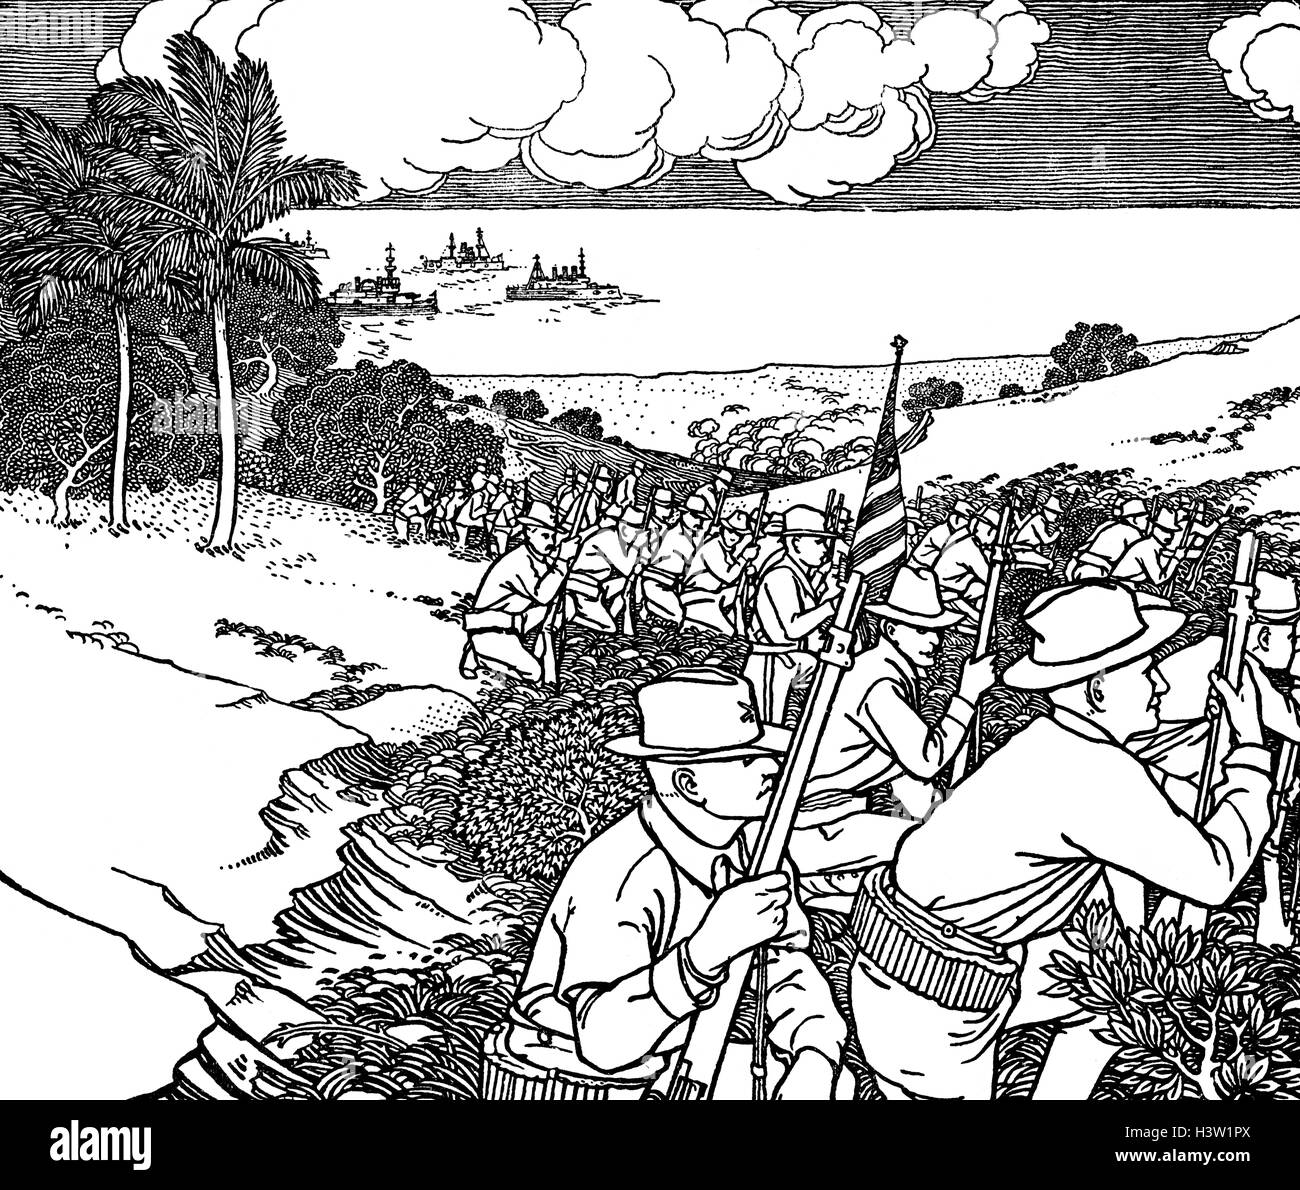 24 juin 1898 GUERRE HISPANO-AMÉRICAINE L'infanterie américaine d'envahir Cuba QUATRE NAVIRES EN ARRIÈRE-PLAN Banque D'Images